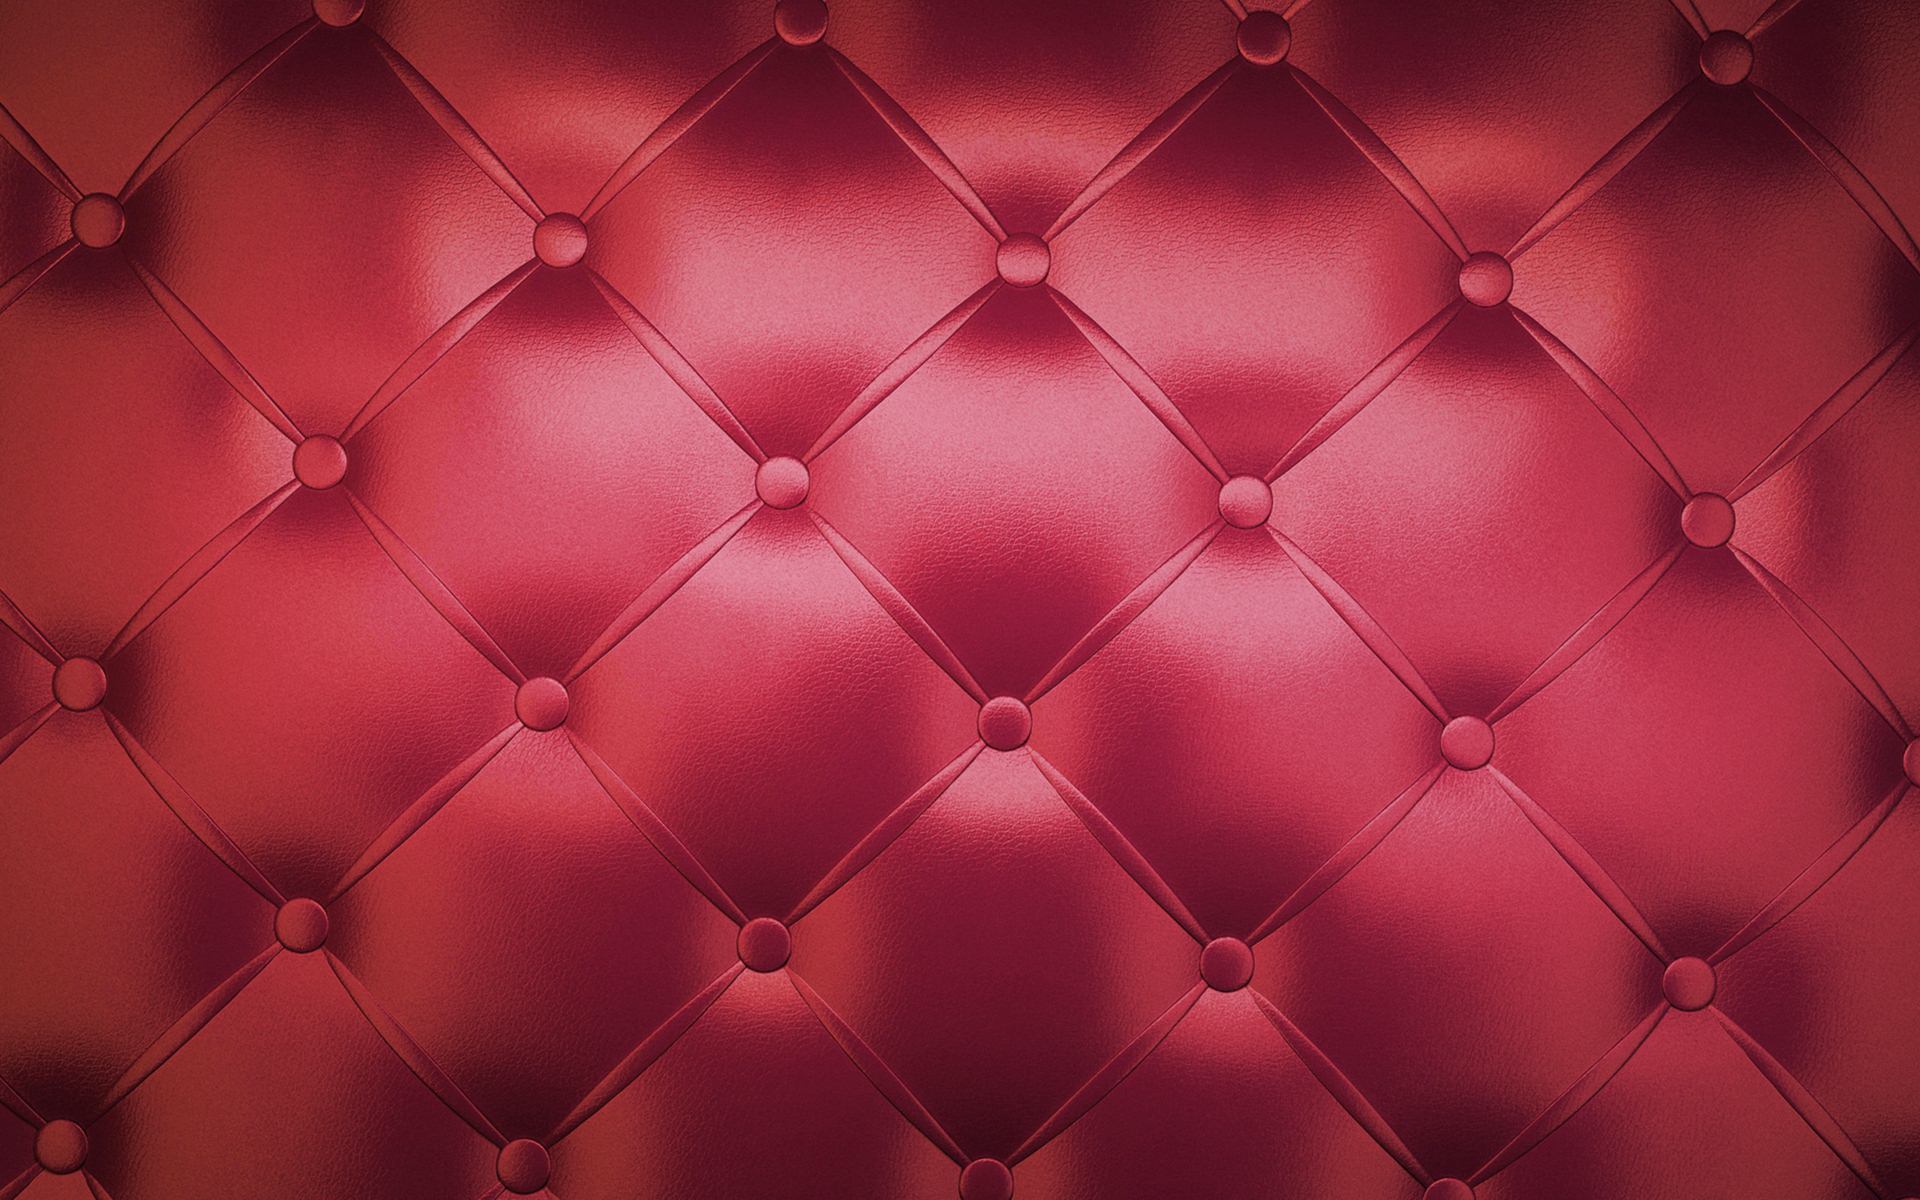 Red Sofa Texture Wallpaper 8857 9186 Hd Wallpapers - Sofa Texture -  1920x1200 Wallpaper 